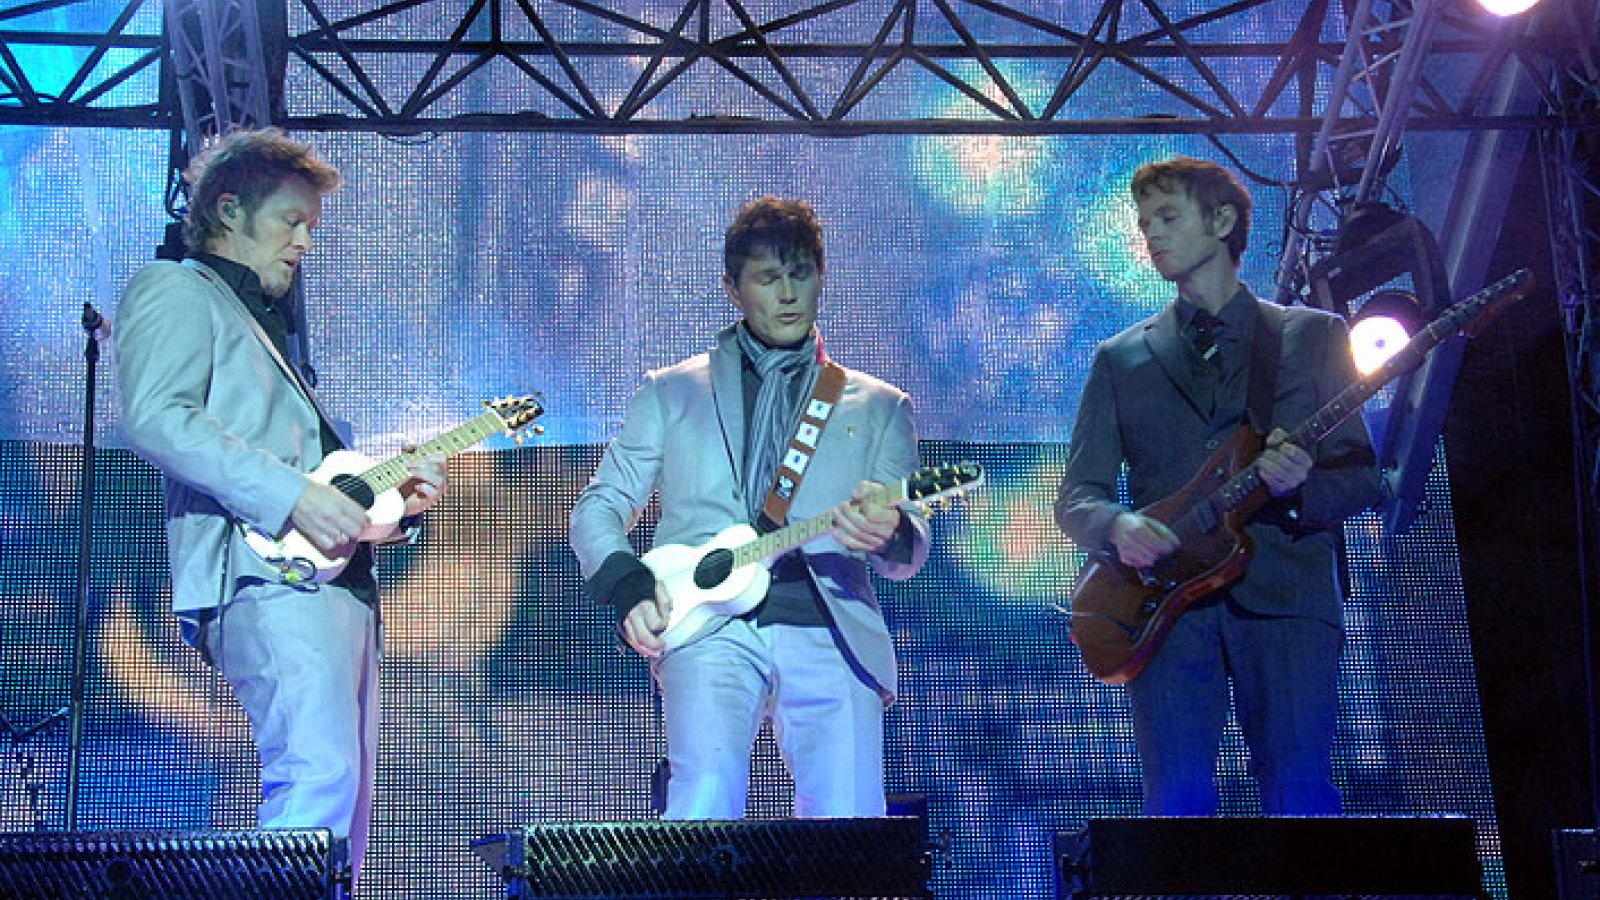 Aha-konsert-gitarer